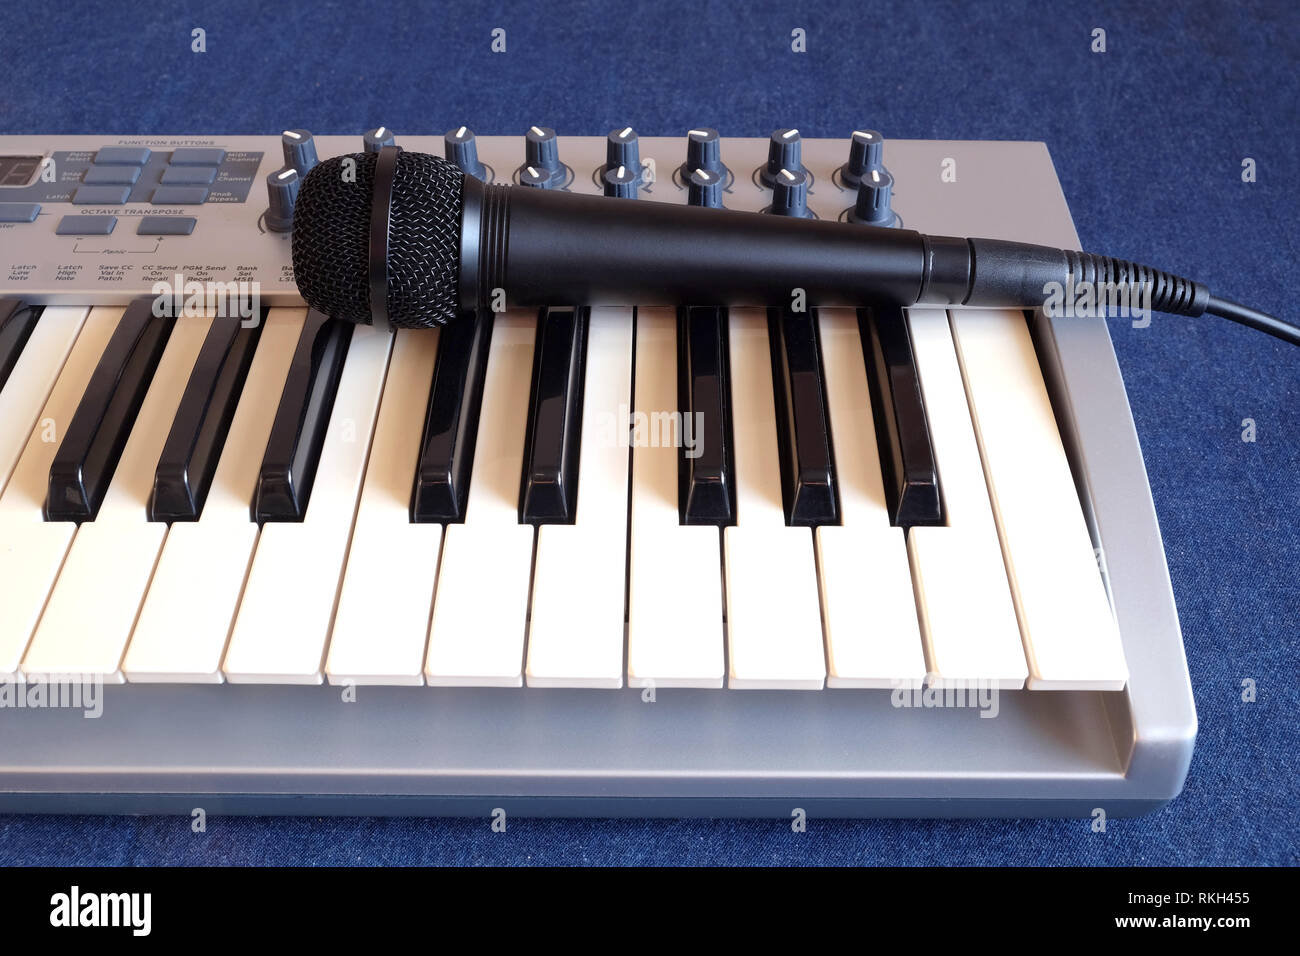 Schwarz Mikrofon auf elektronische Synthesizer Keyboard mit vielen Drehknöpfe denim Hintergrund Vorderansicht closeup Stockfoto